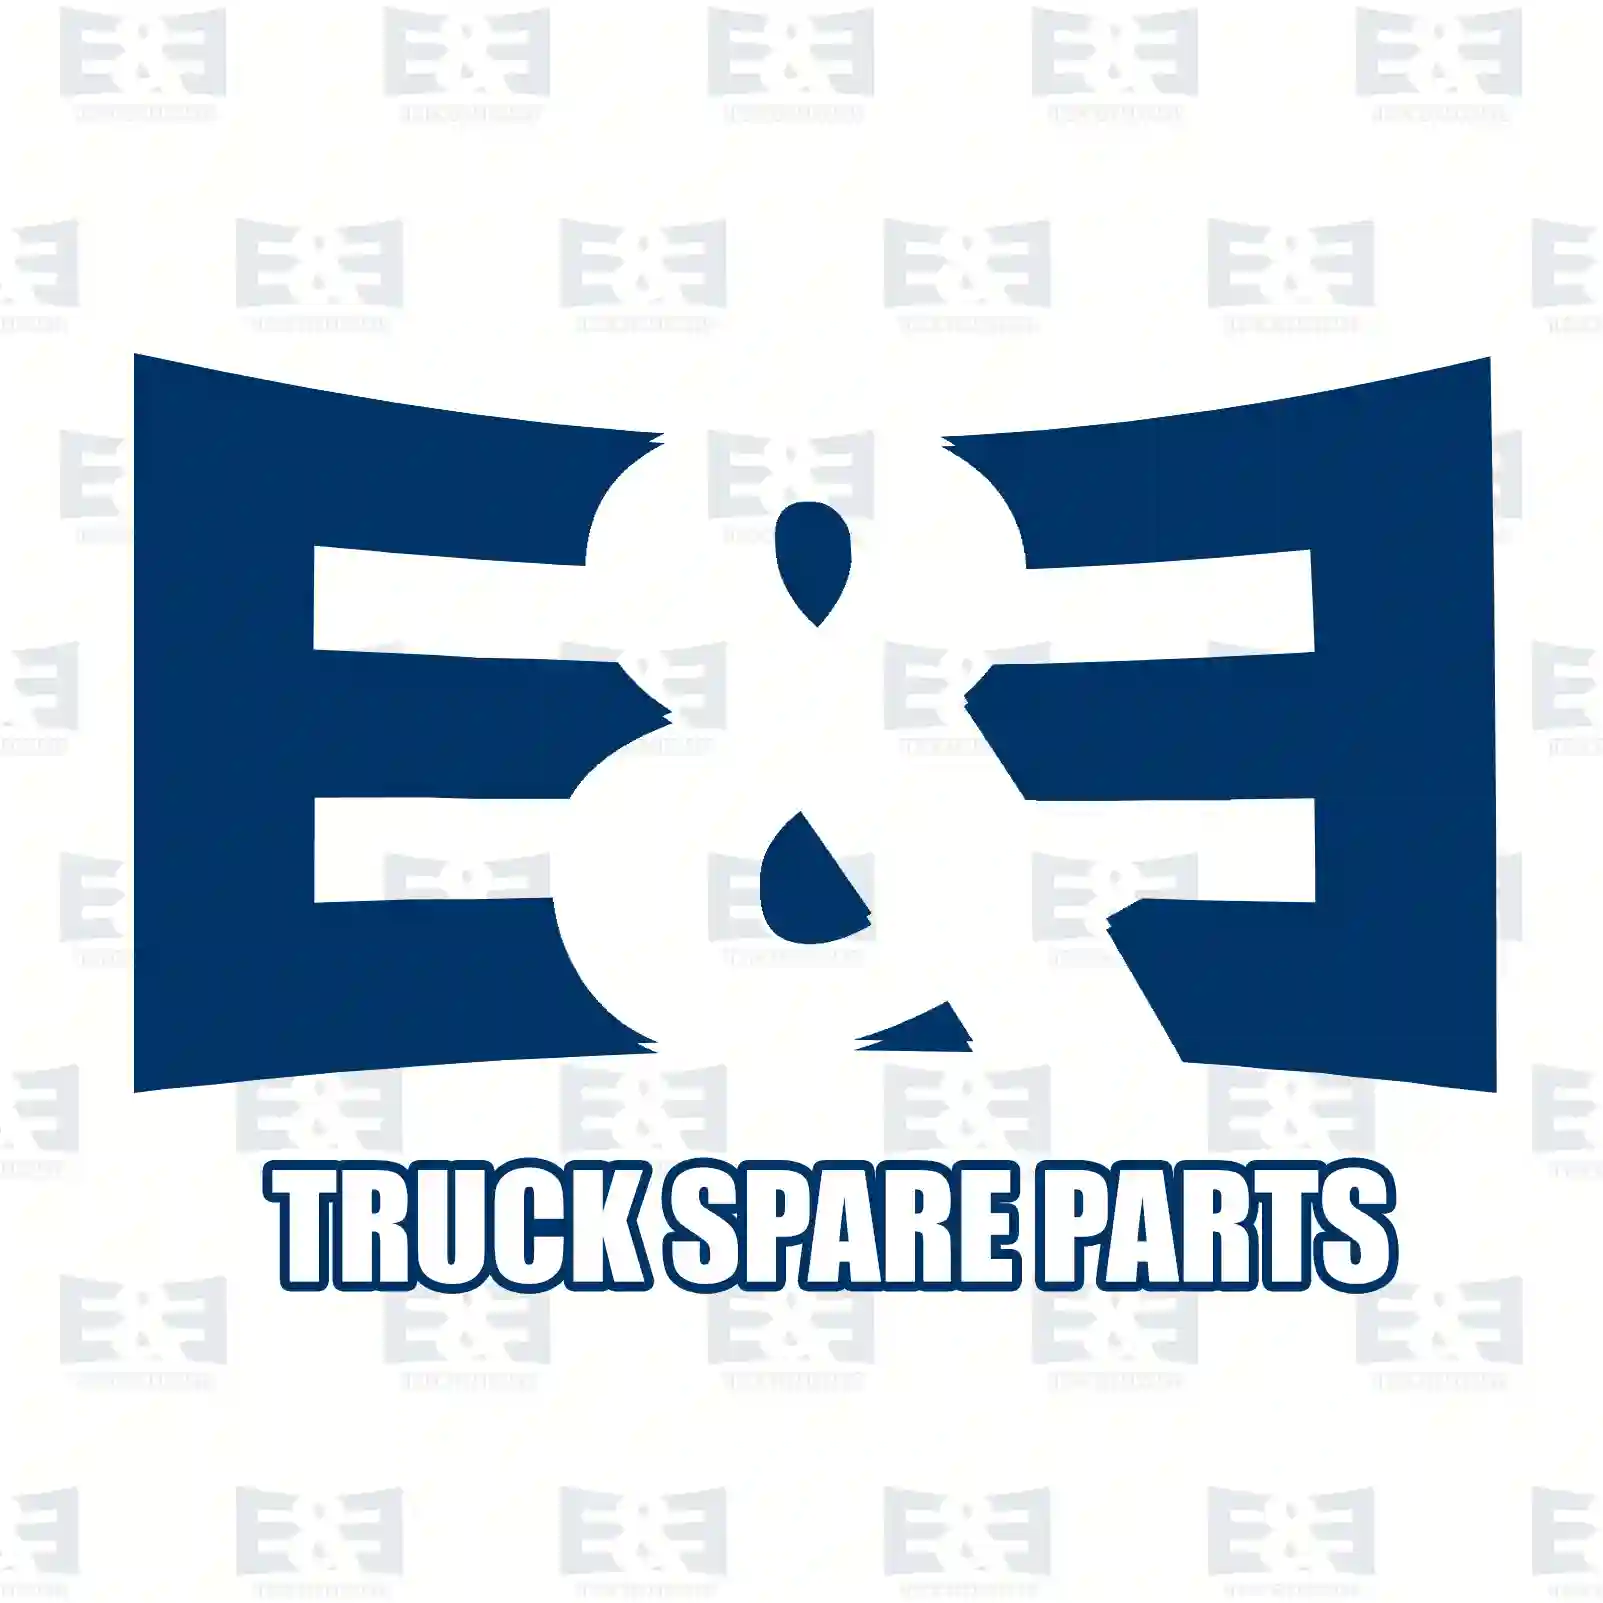 Shock absorber, 2E2282212, 5010130009, , , , , , ||  2E2282212 E&E Truck Spare Parts | Truck Spare Parts, Auotomotive Spare Parts Shock absorber, 2E2282212, 5010130009, , , , , , ||  2E2282212 E&E Truck Spare Parts | Truck Spare Parts, Auotomotive Spare Parts